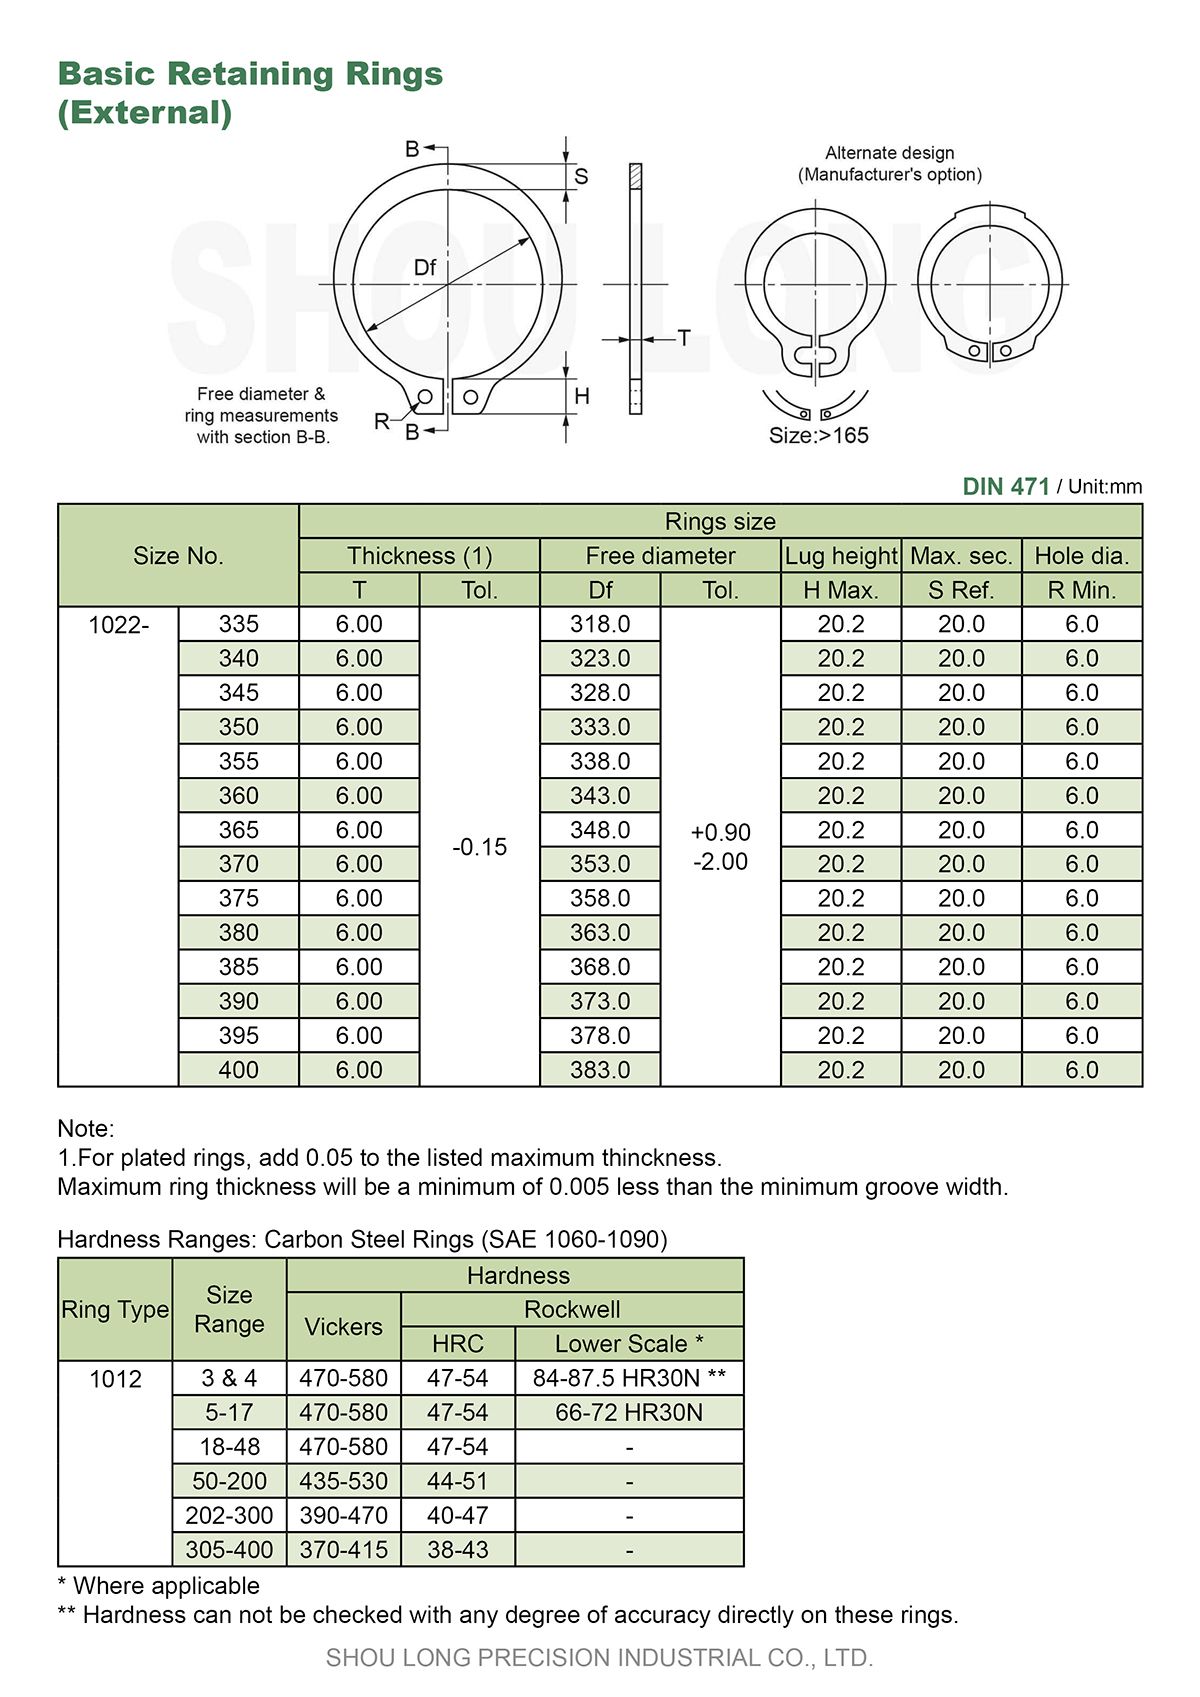 مواصفات حلقات الاحتفاظ الأساسية بالمقاسات المترية للعمود DIN471-7